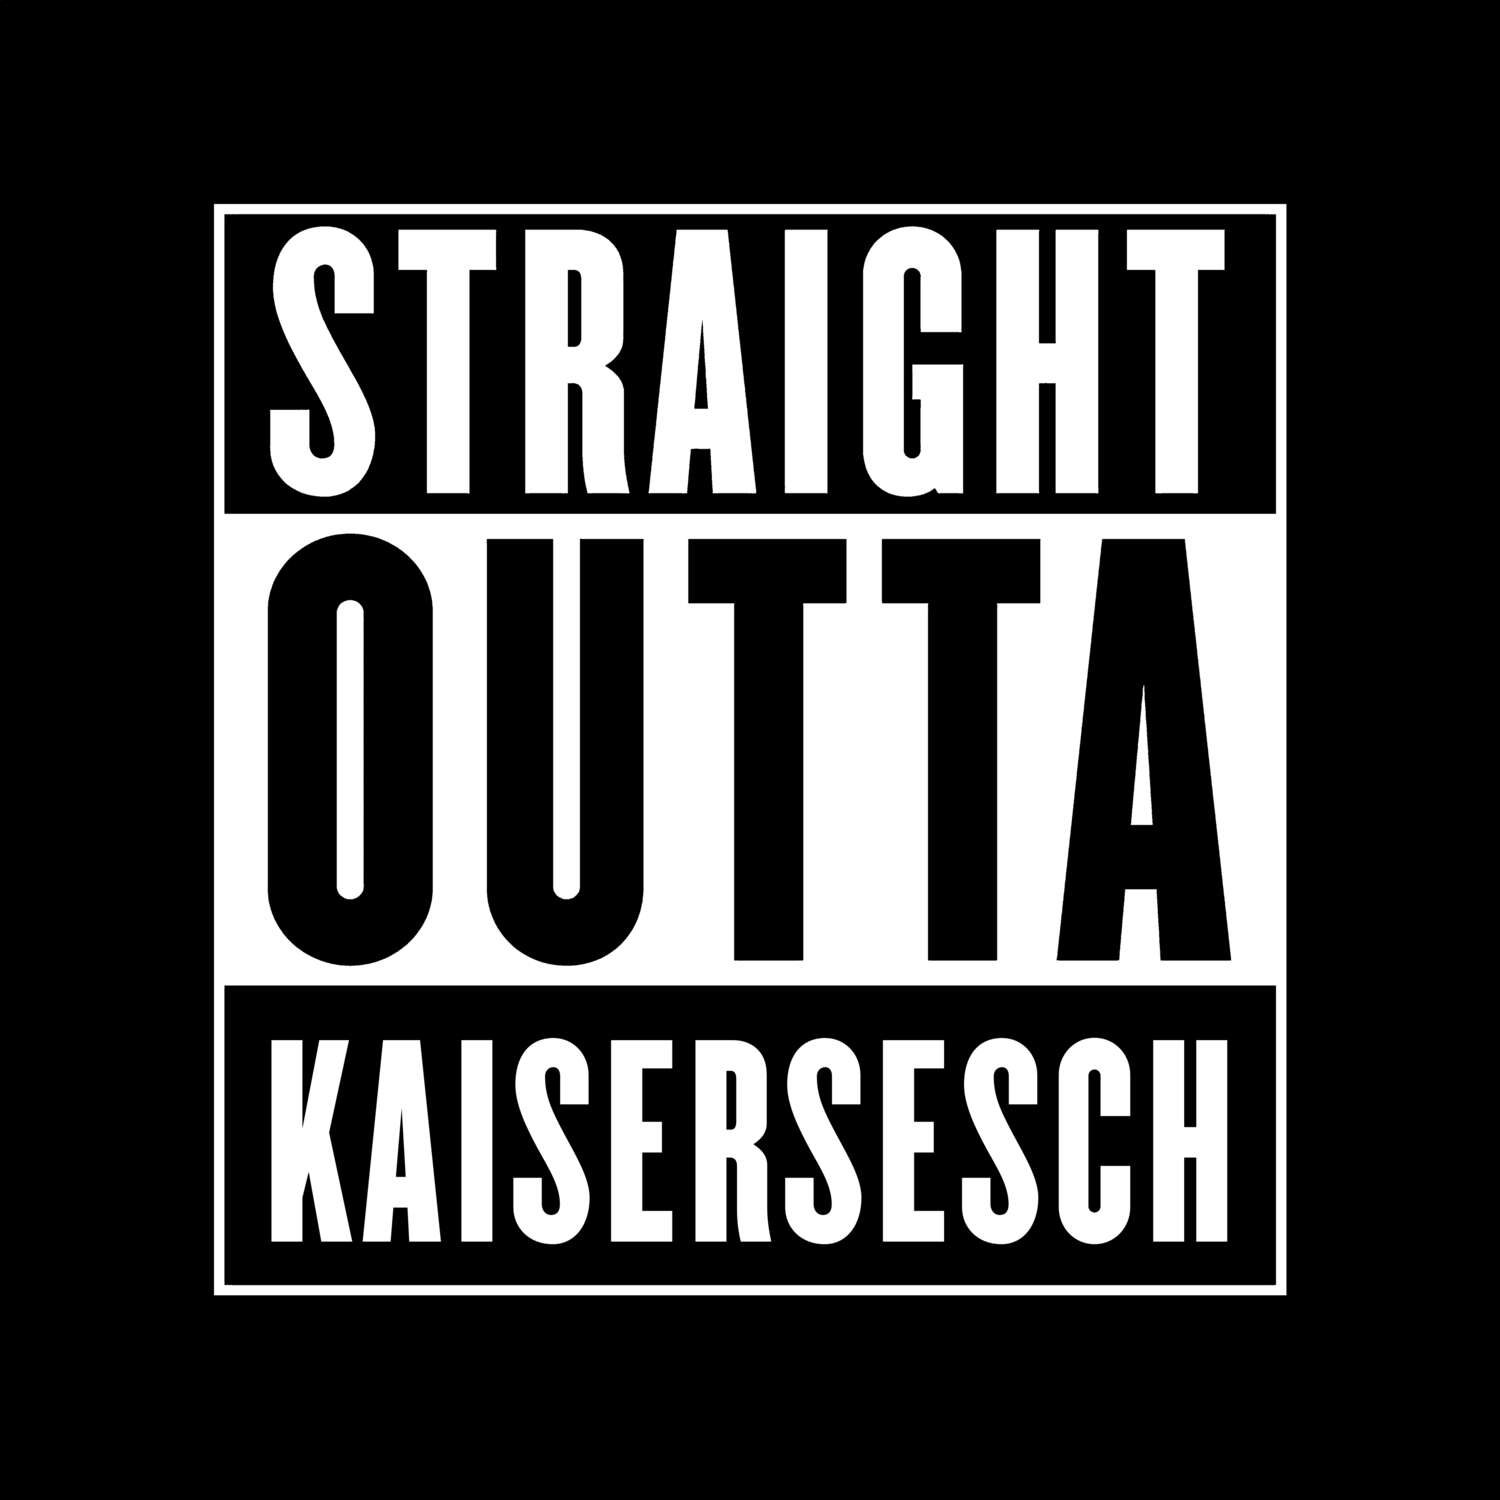 Kaisersesch T-Shirt »Straight Outta«